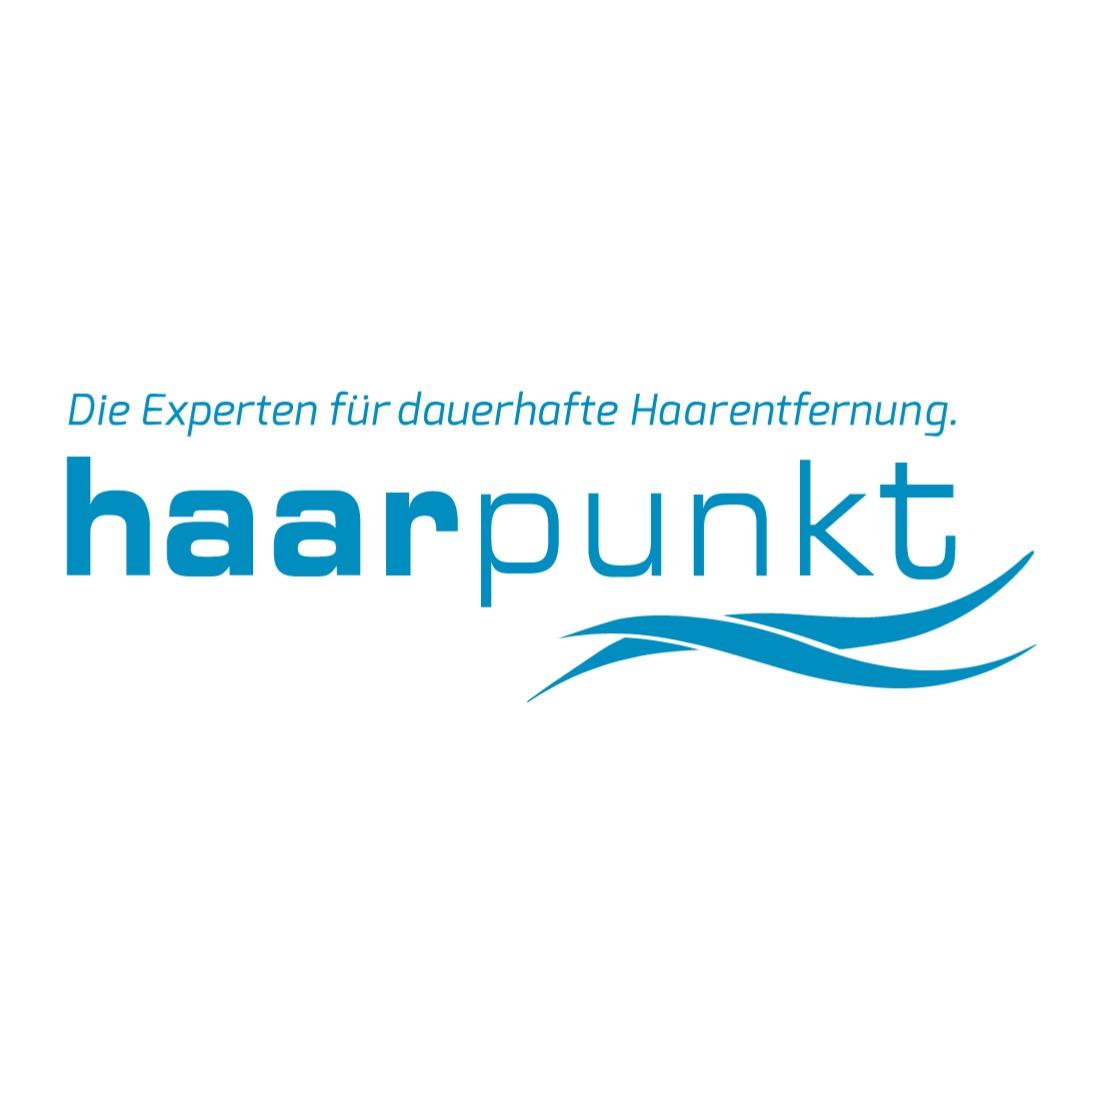 Bild zu Haarpunkt Bonn, Dauerhafte Haarentfernung mit modernster Lasertechnologie in Bonn